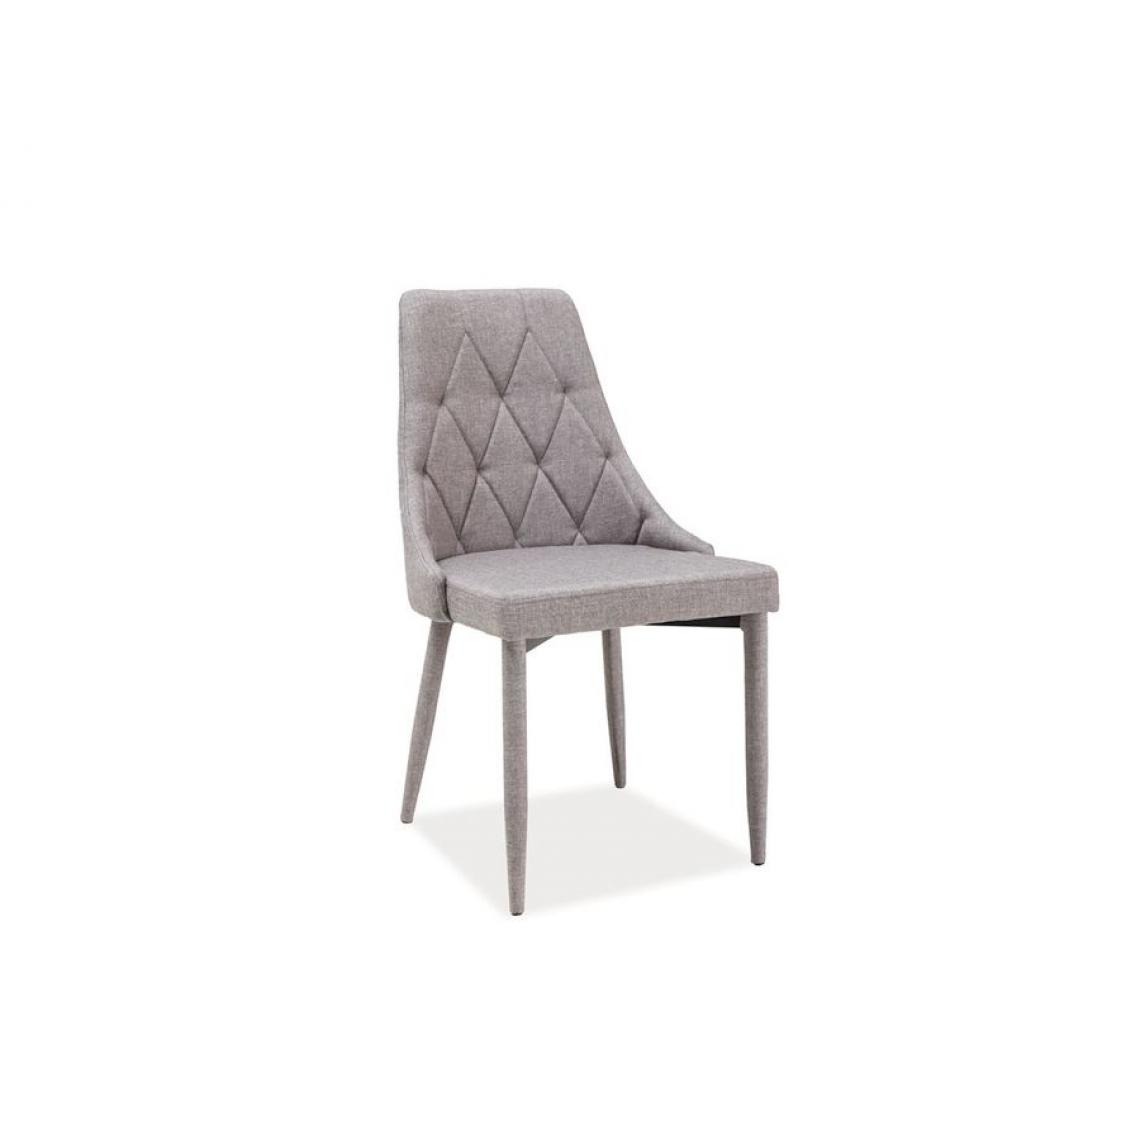 Hucoco - TRIB | Chaise moderne de style scandinave | Dimensions: 88x46x46 cm | Rembourrée en tissu | Structure en métal rembourrée - Gris - Chaises